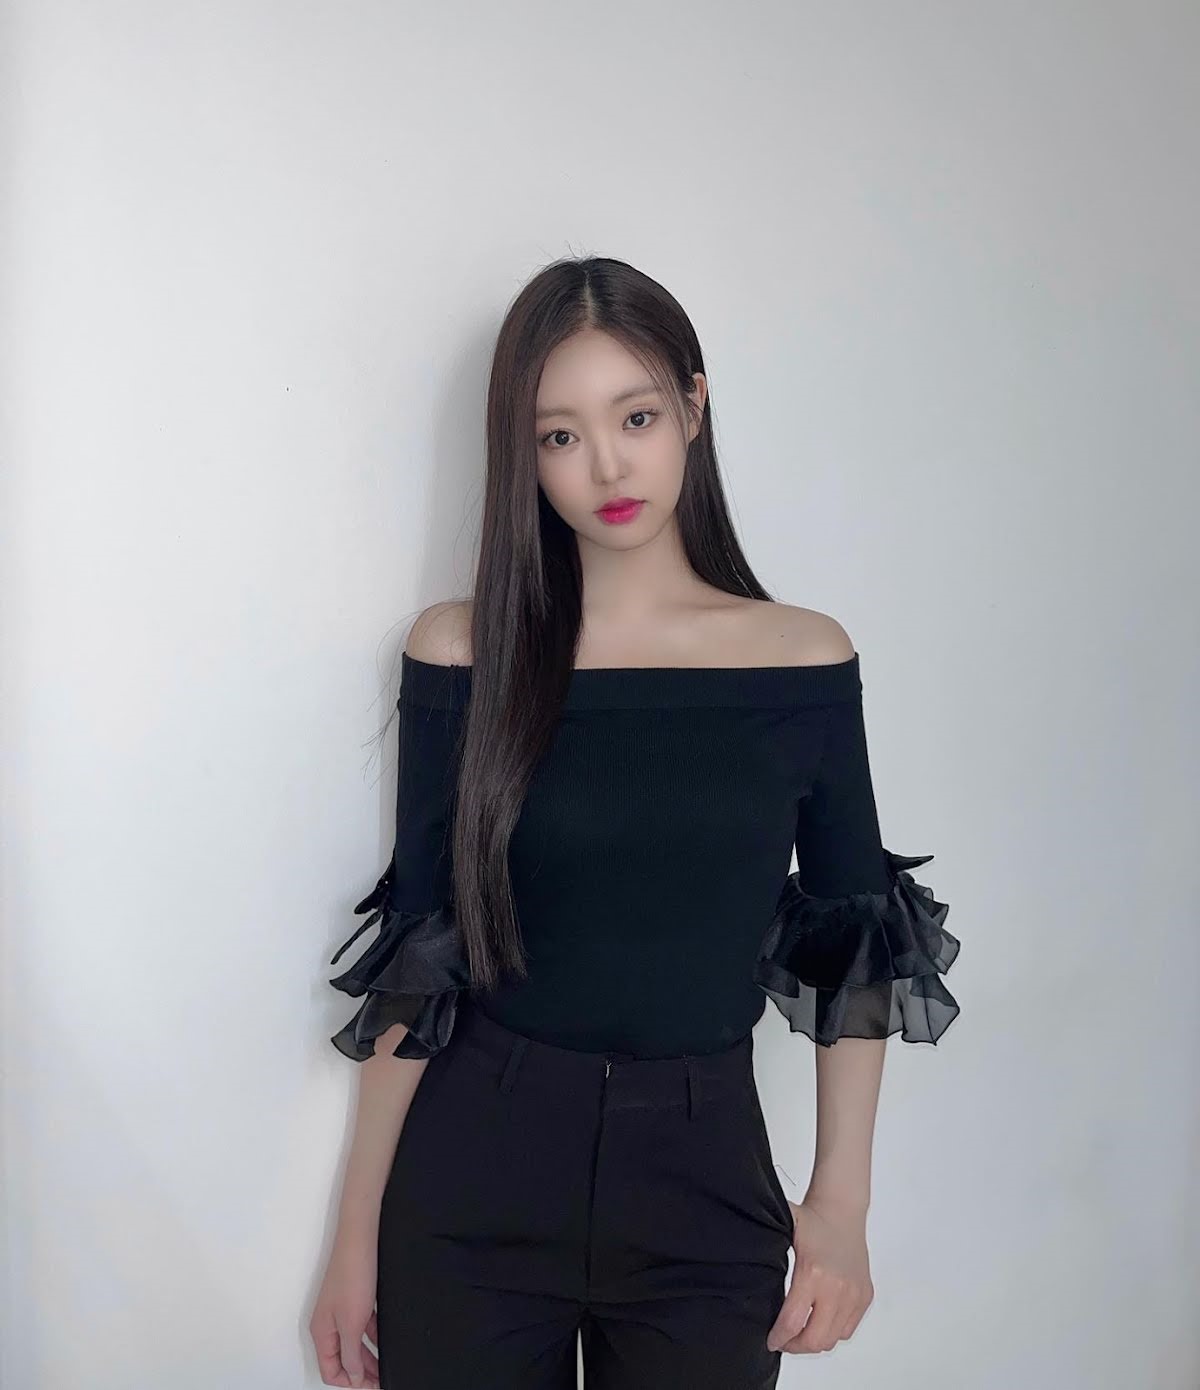 Dù nổi tiếng nhờ giống Jennie nhưng Si Eun vẫn mong muốn có được màu sắc của riêng mình. Ảnh: Instagram nhân vật